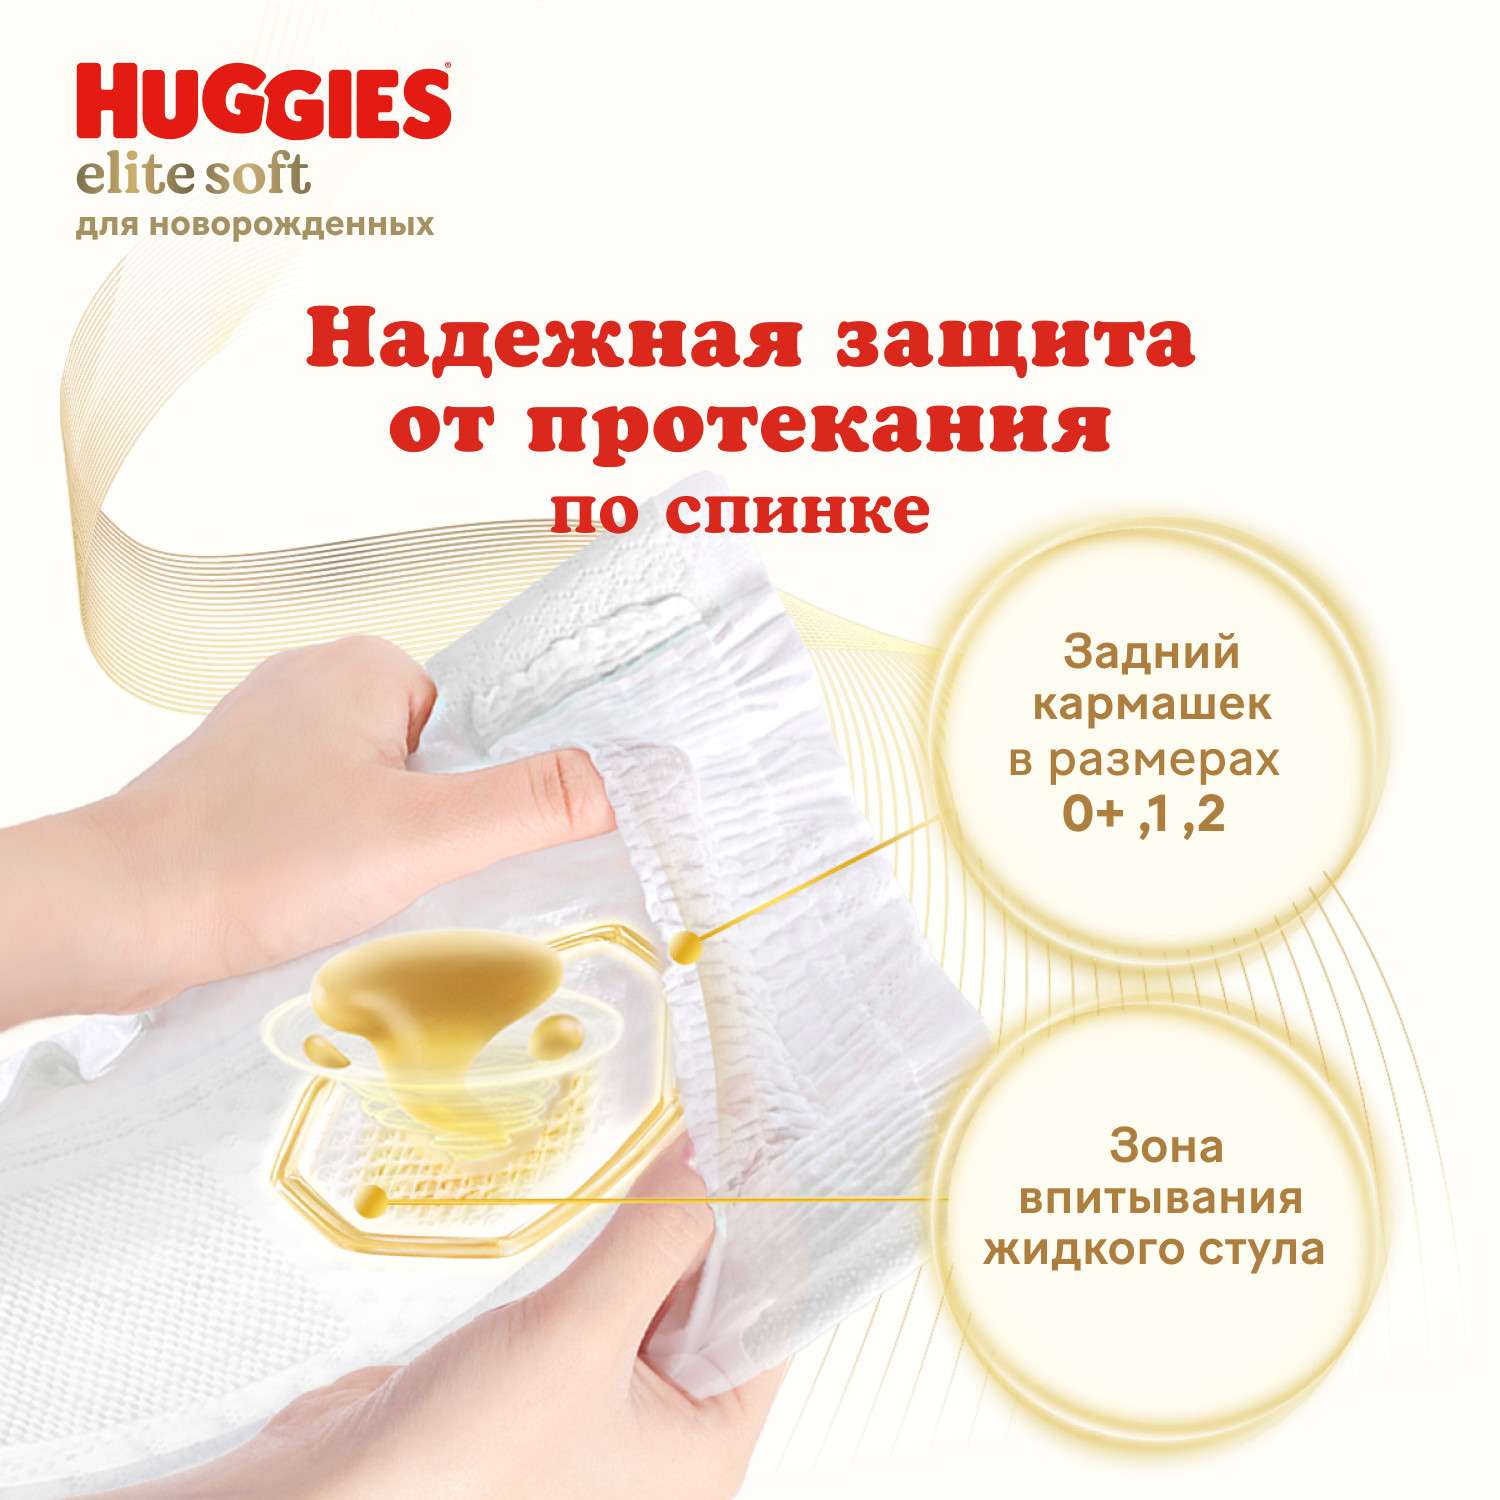 Подгузники Huggies Elite Soft для новорожденных 0 до 3.5кг 25шт - фото 6